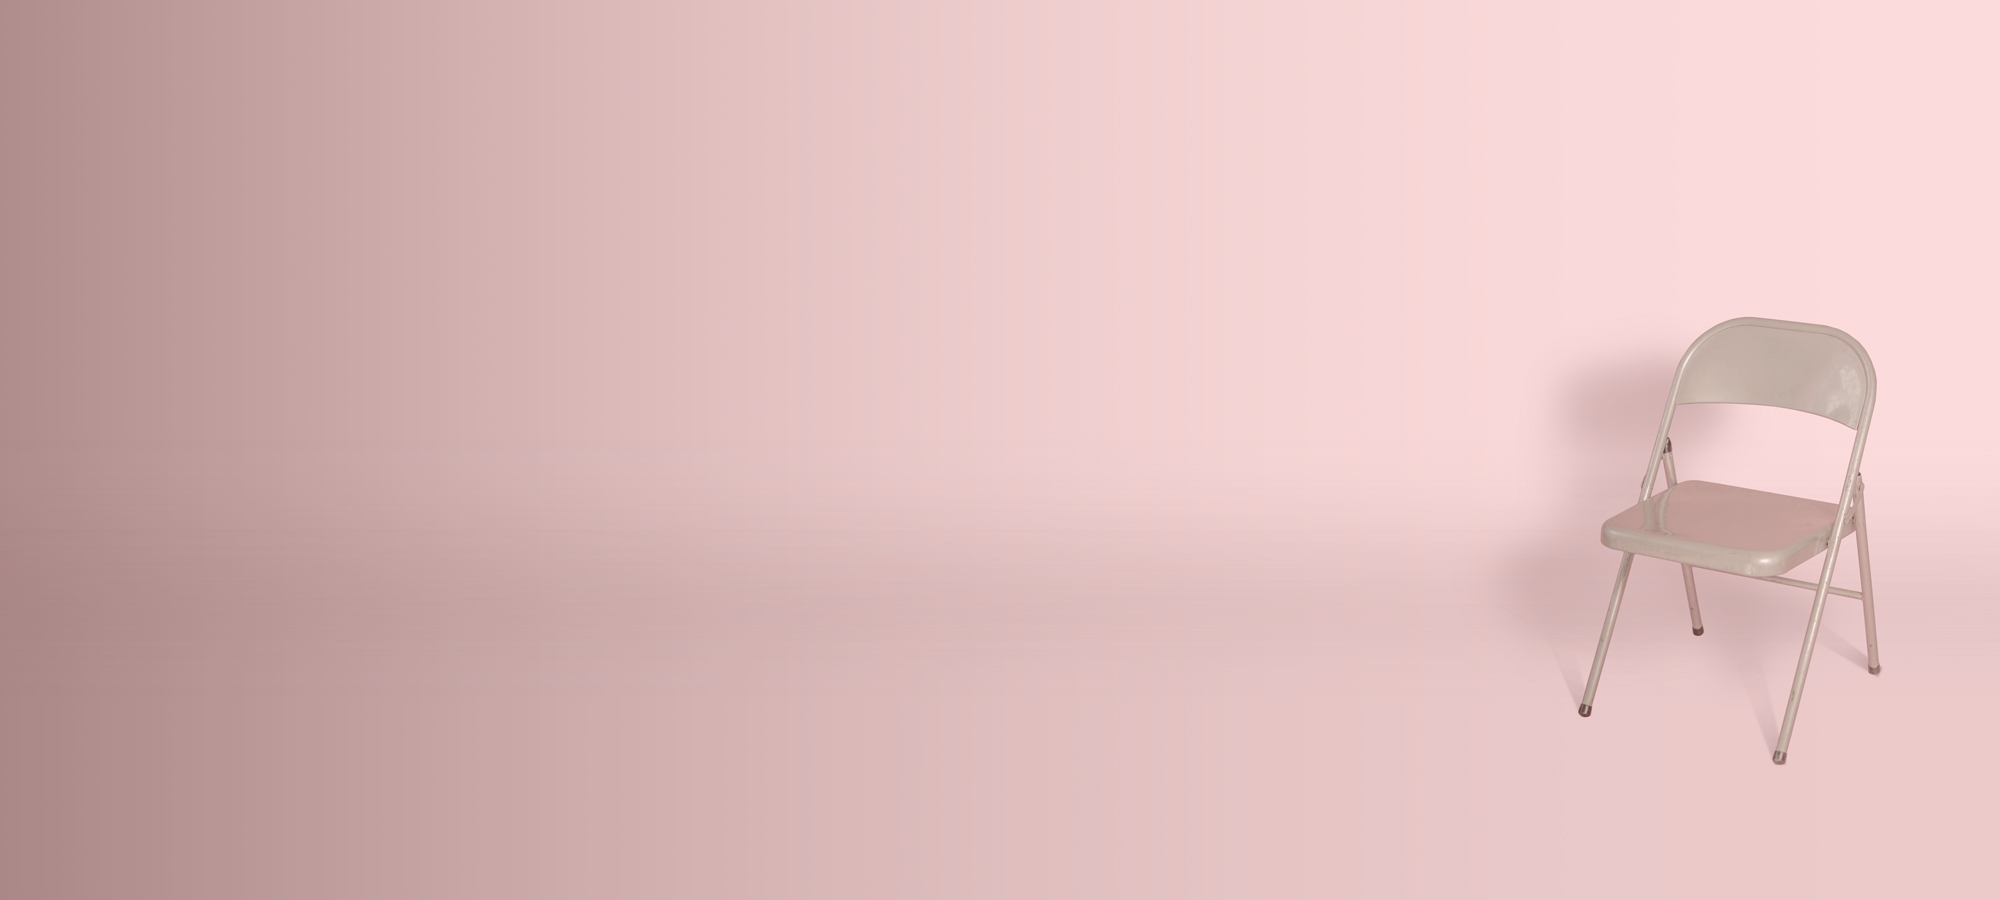 Stol med rosa bakgrund